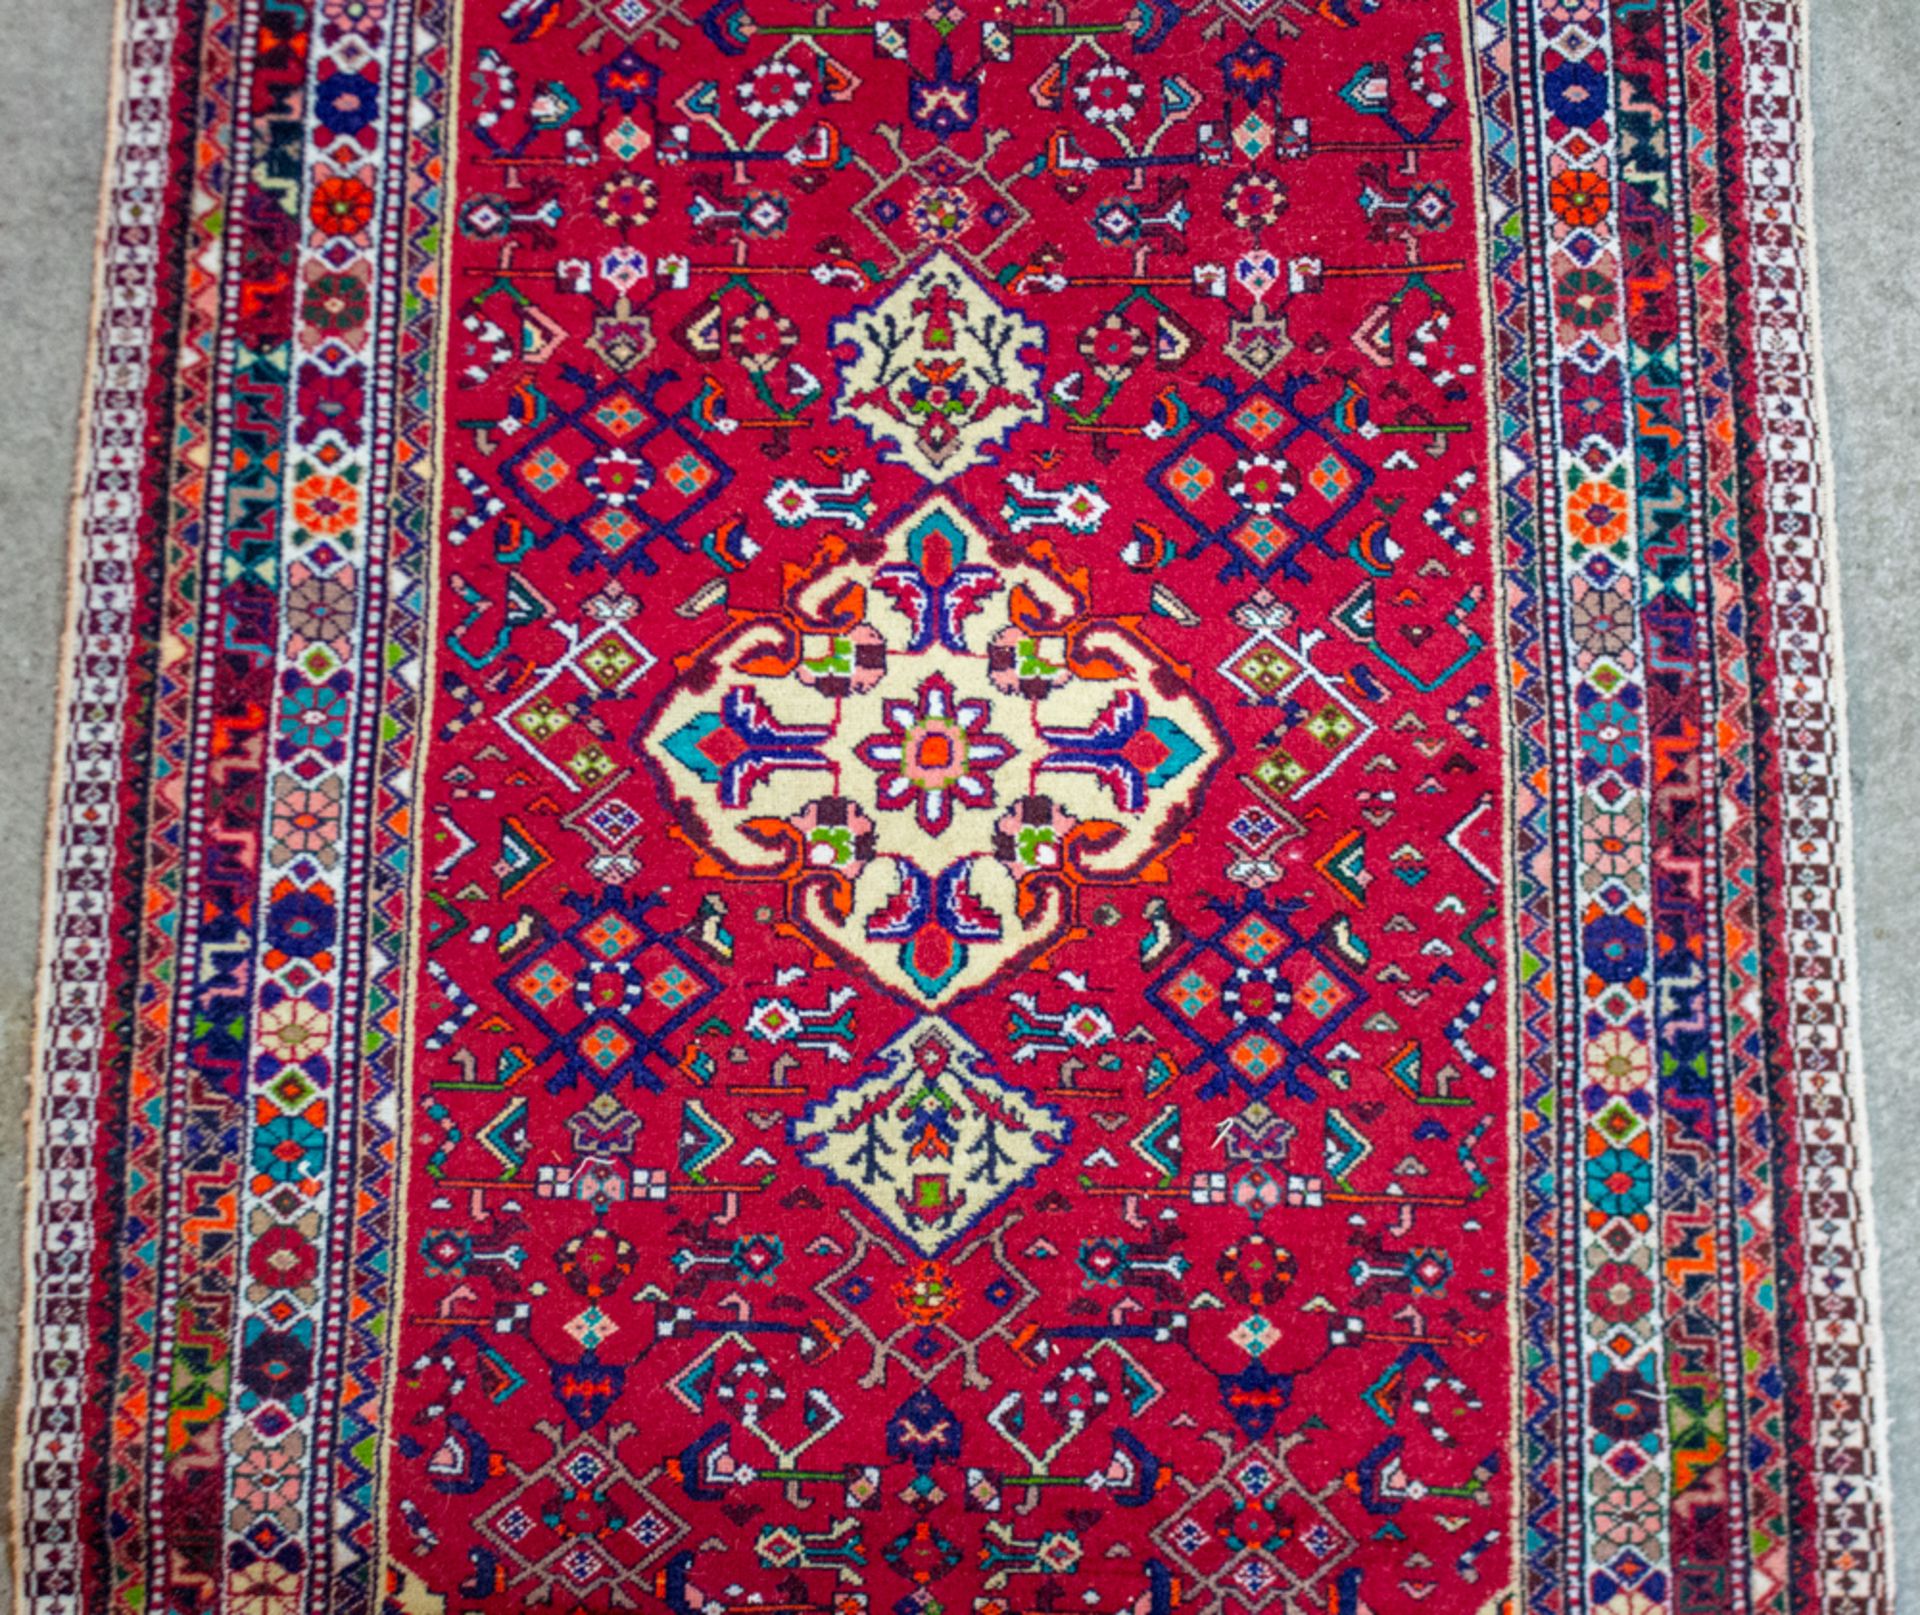 Farbenprächtiger Teppich in Rottönen mit blau. - Bild 3 aus 6